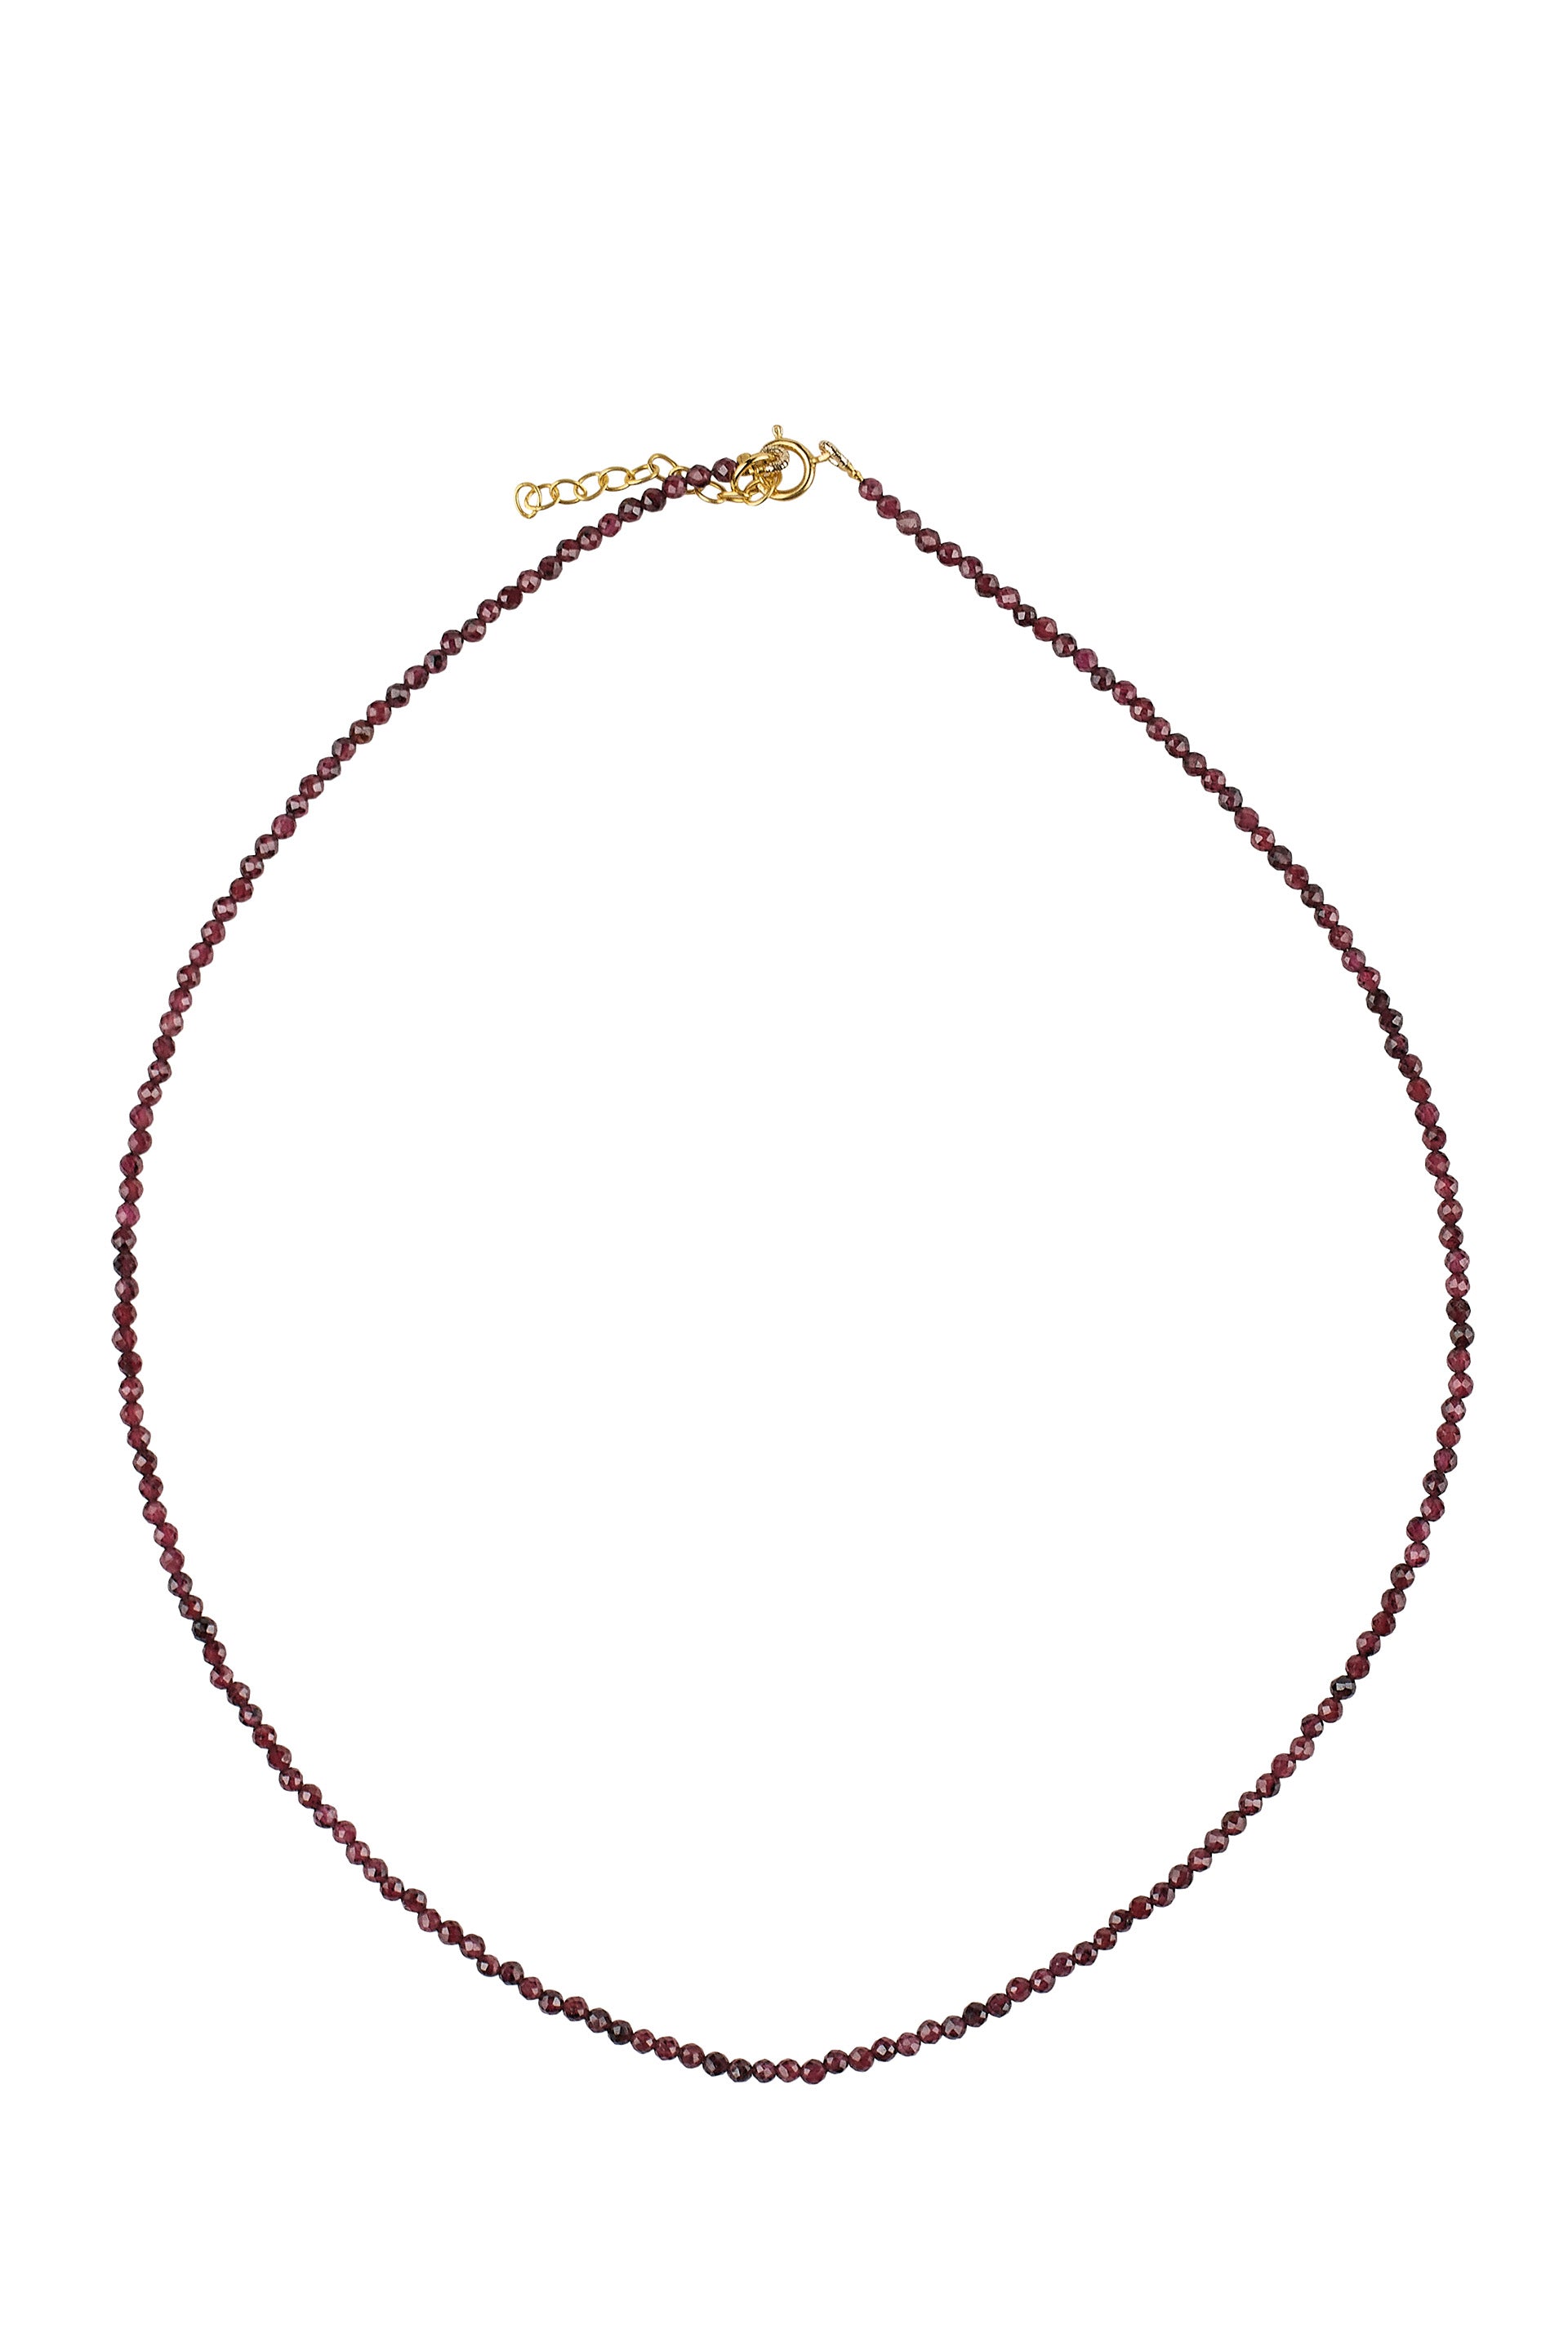 Necklace Garnet wit g-p lock